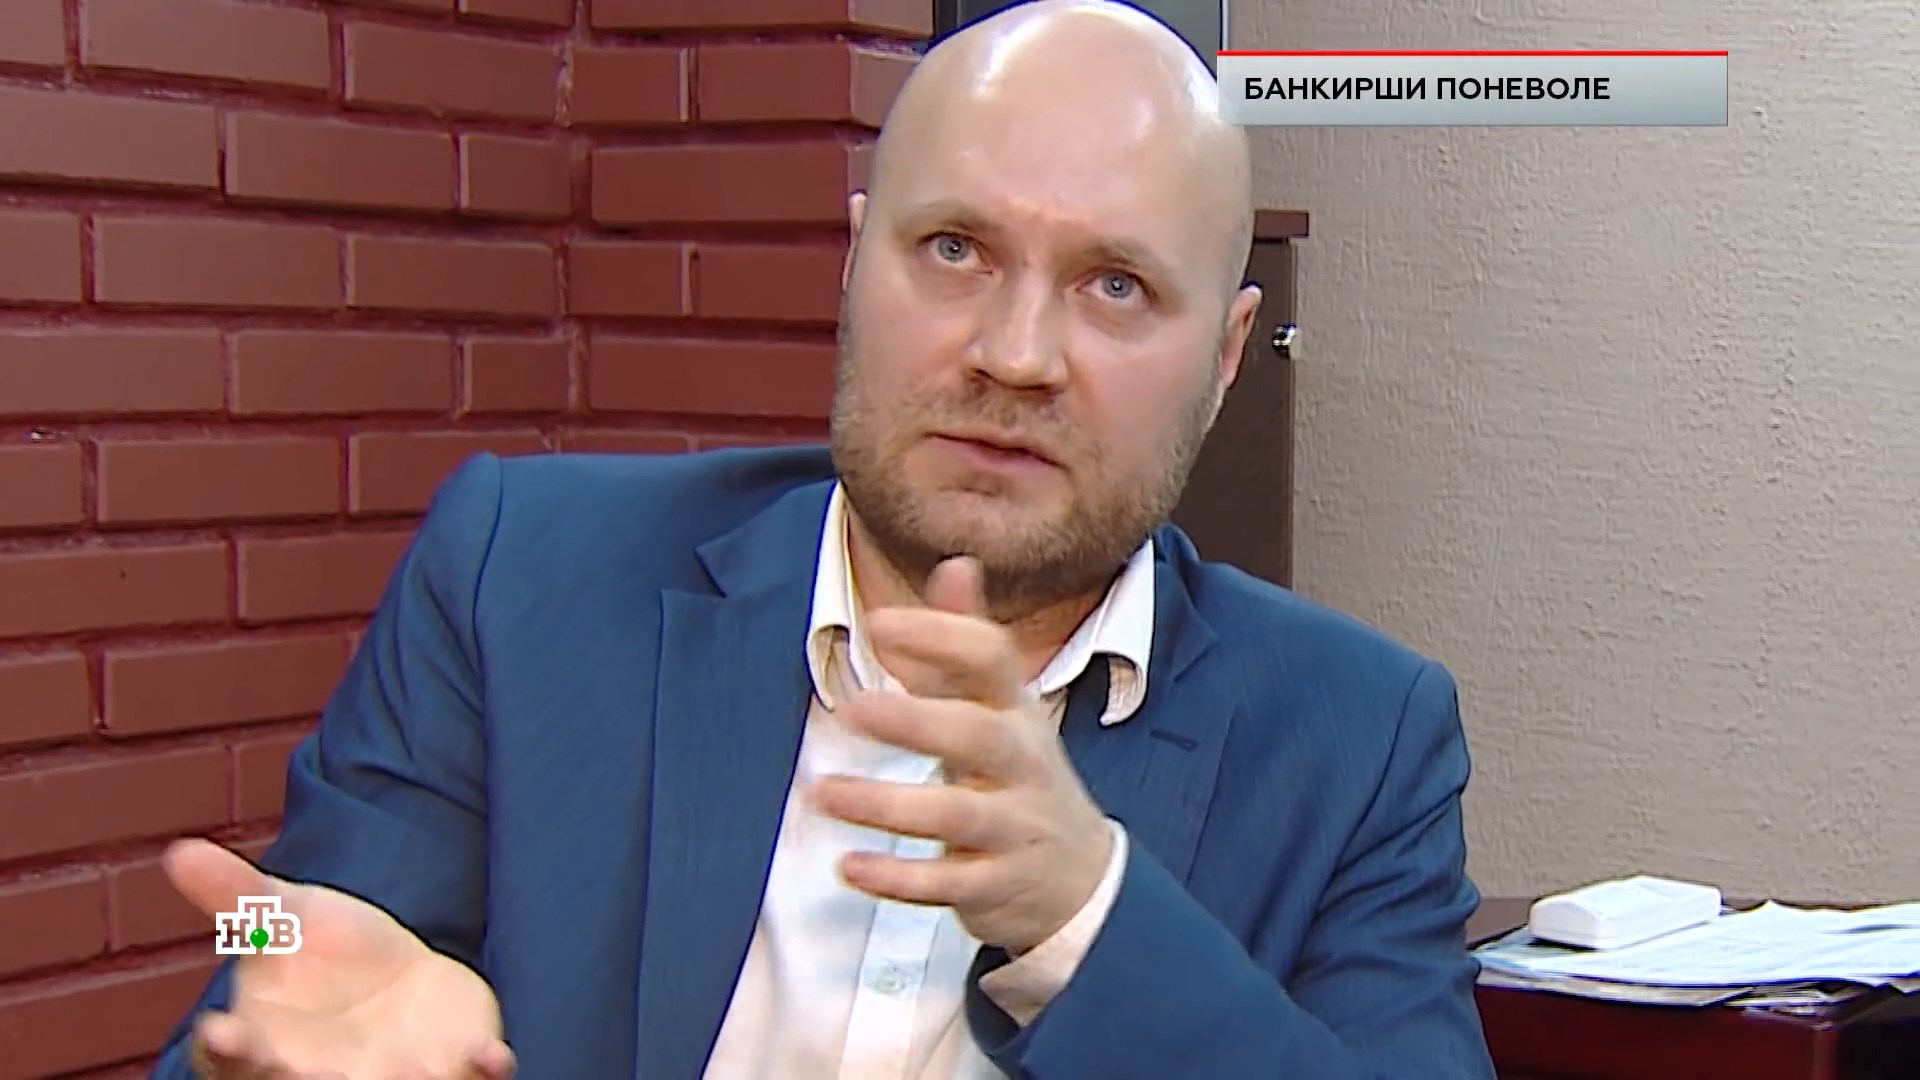 Адвокат Антон Колосов пояснил, что обмануть полиграф очень сложно